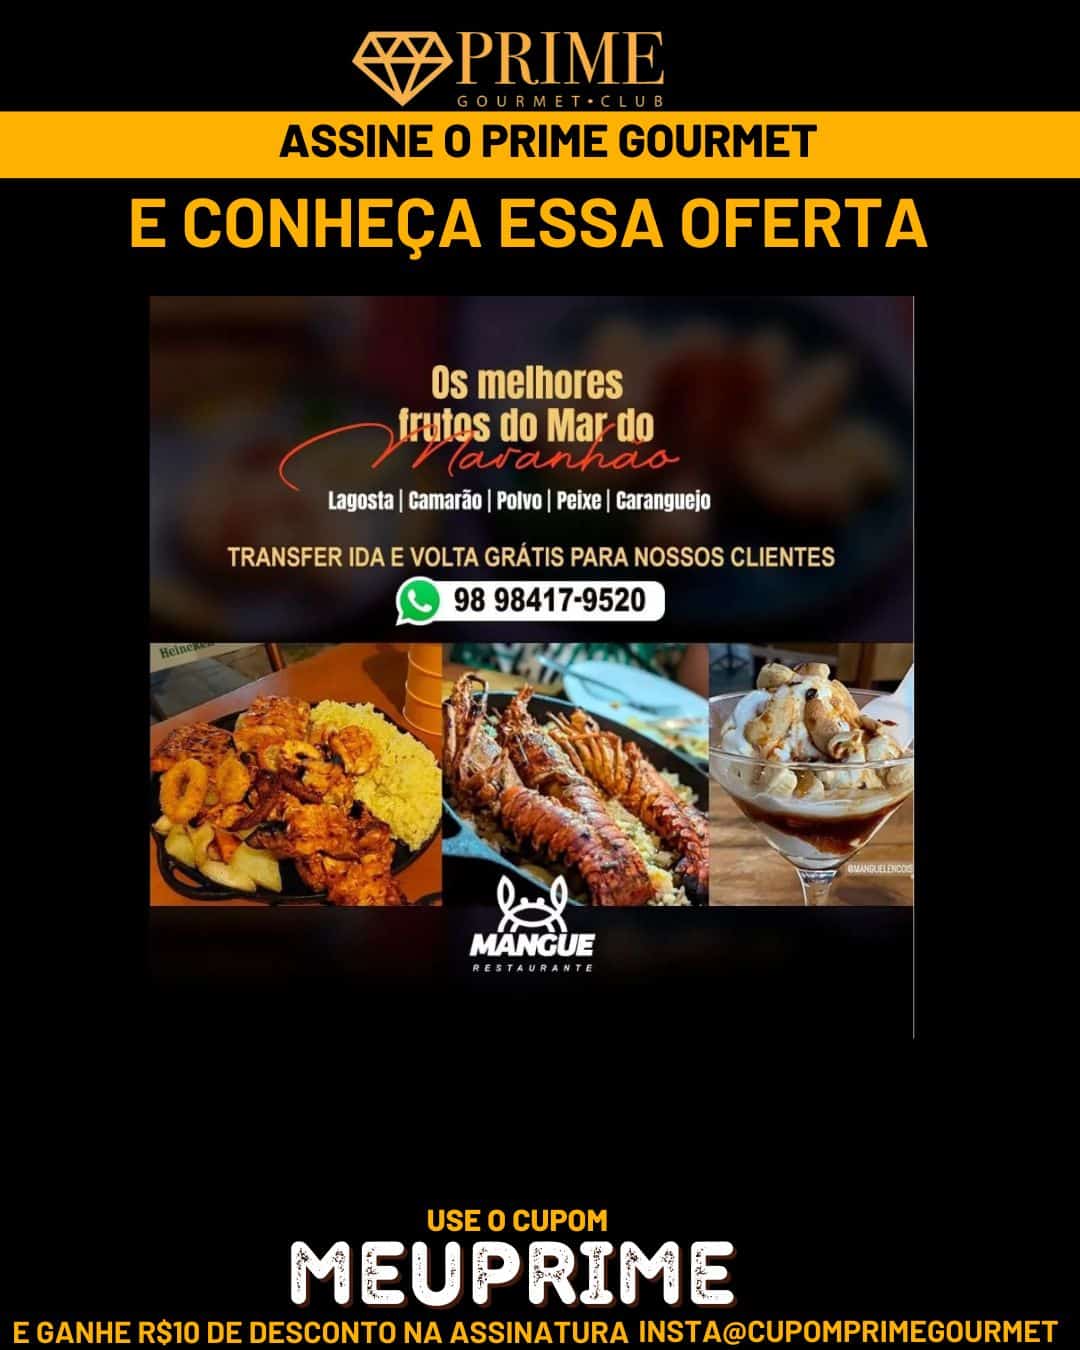 Prime Gourmet Maranhão e Região - Mangue Restaurante